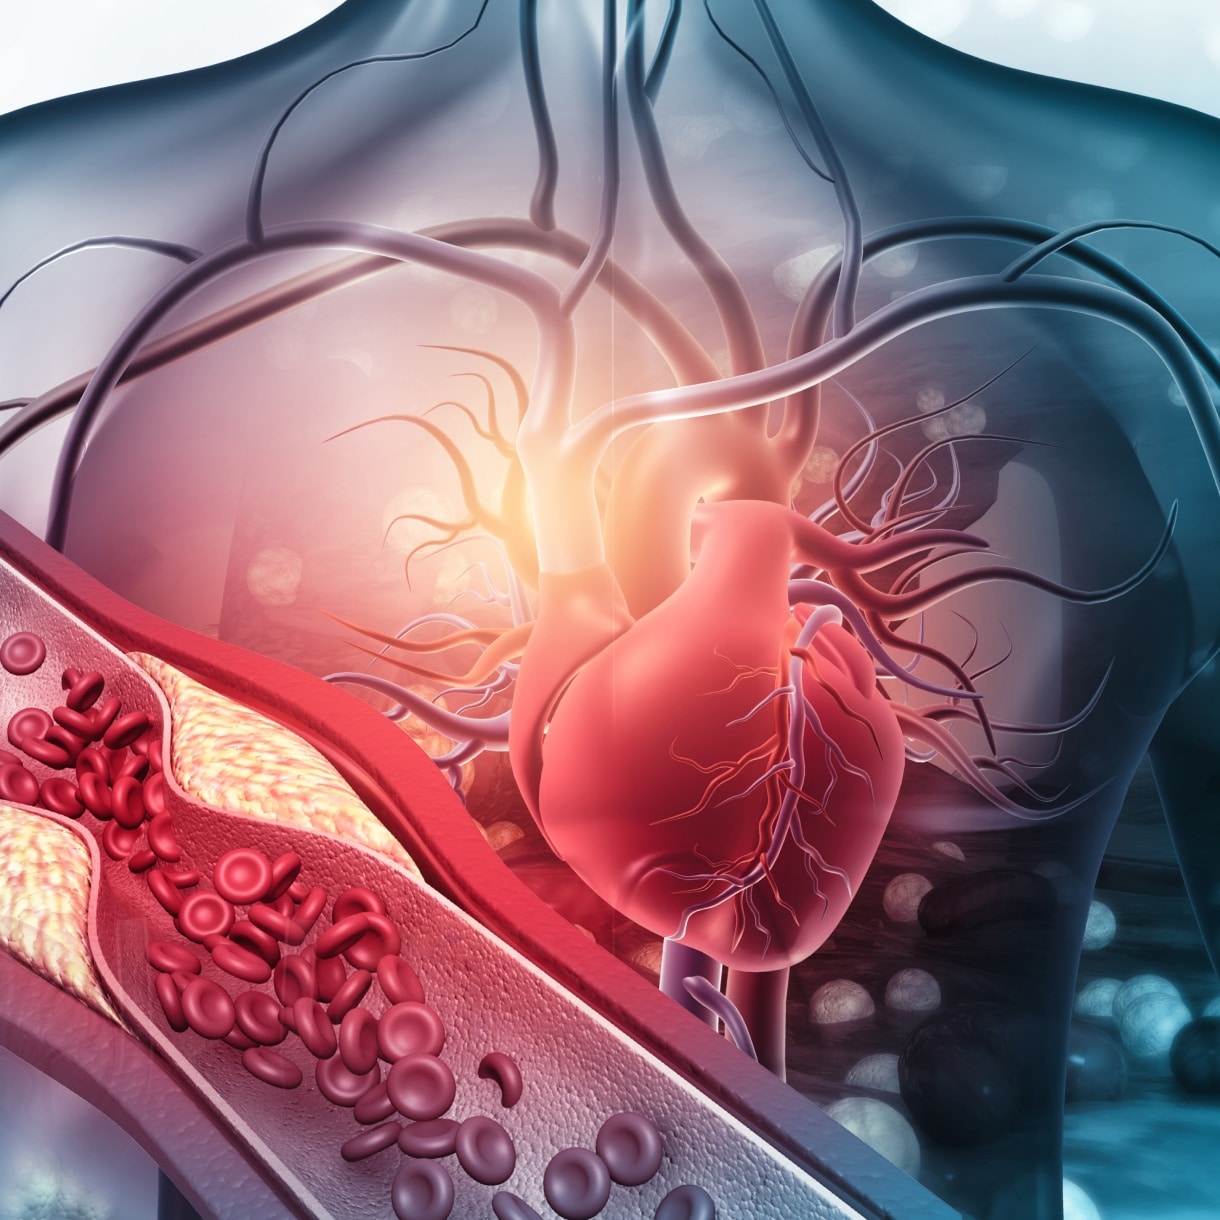 Maladies cardiovasculaires : causes et traitements | maladies cardiovasculaires alimentation | Centre MAAP | Paris